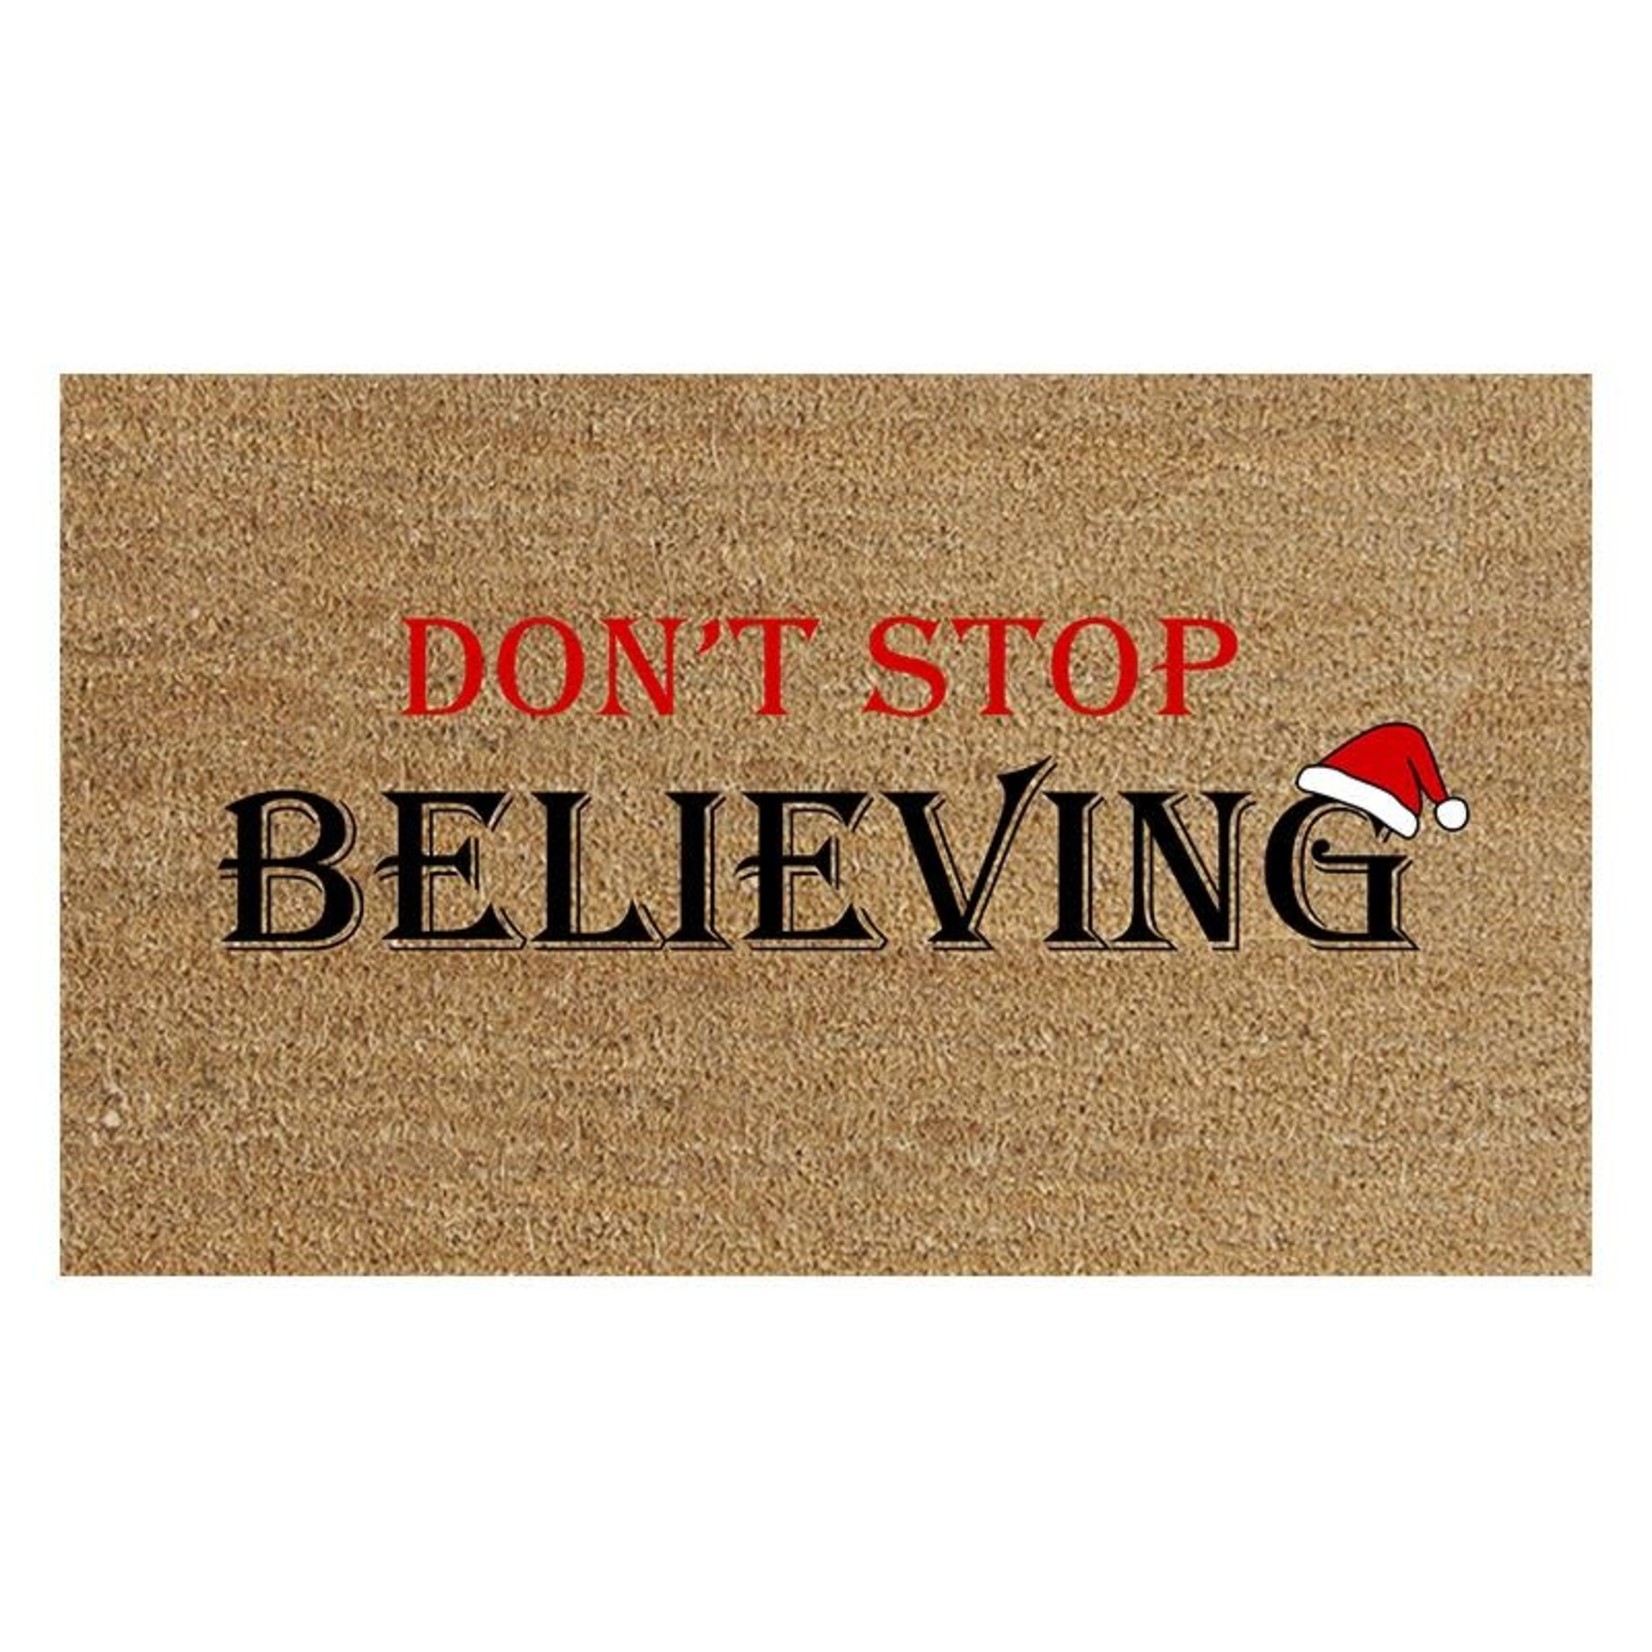 Koppers Don't Stop Believing Doormat